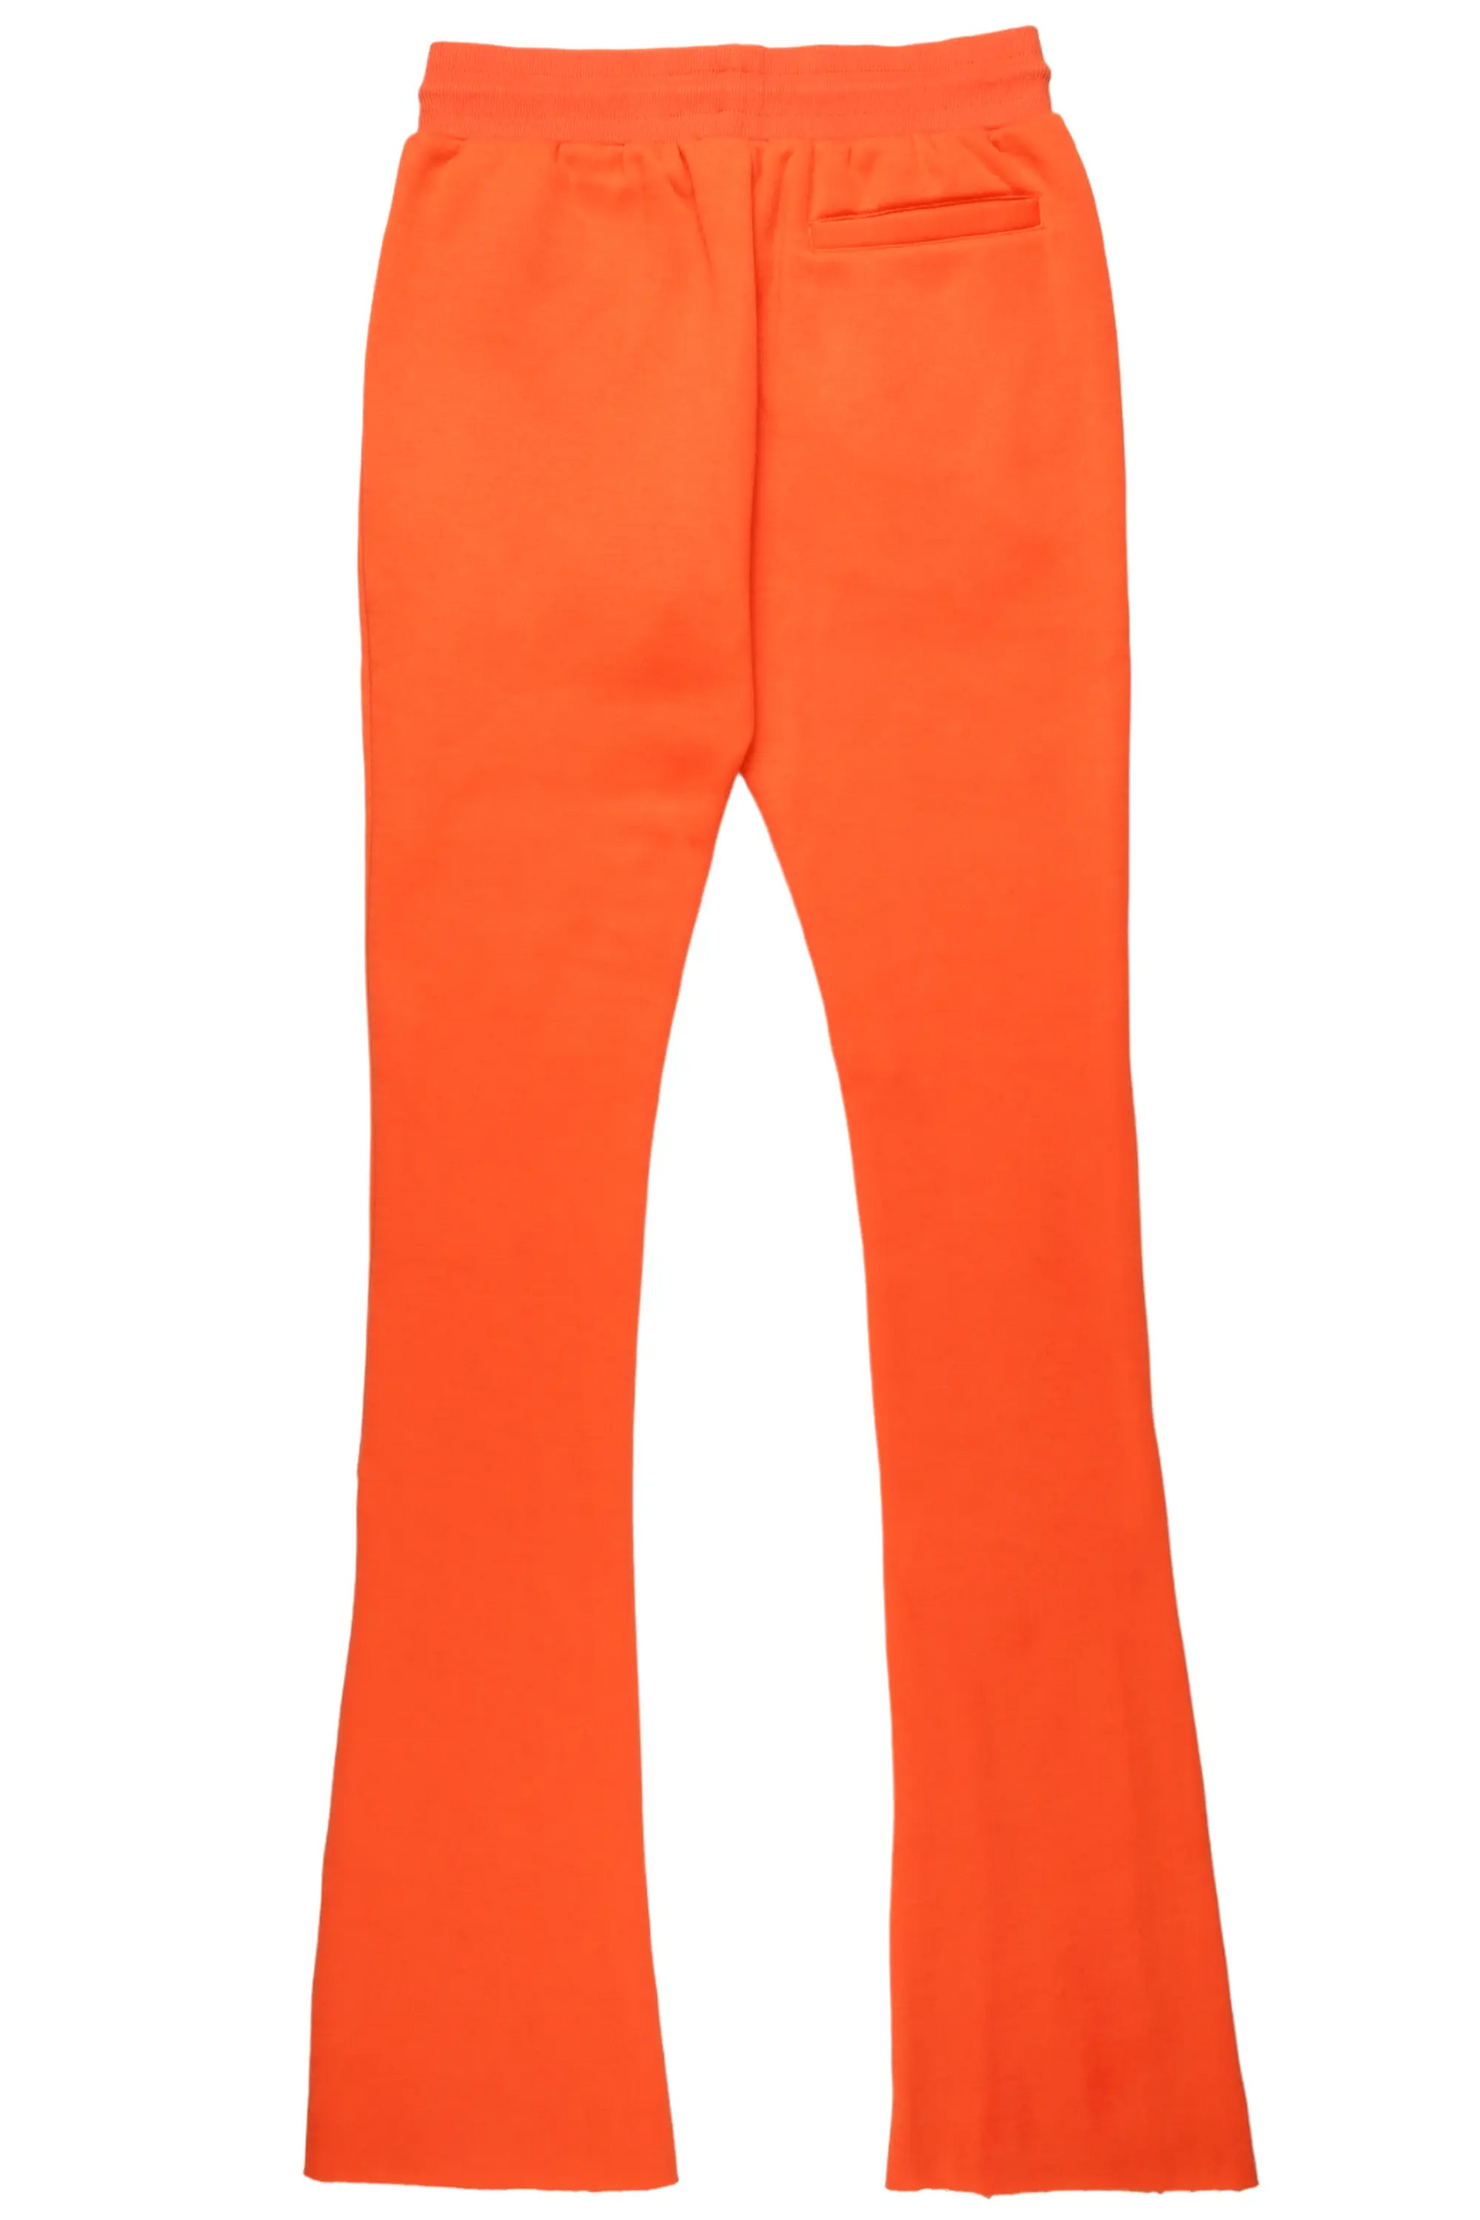 Everest Orange Stacked Flare Track Pant– Rockstar Original